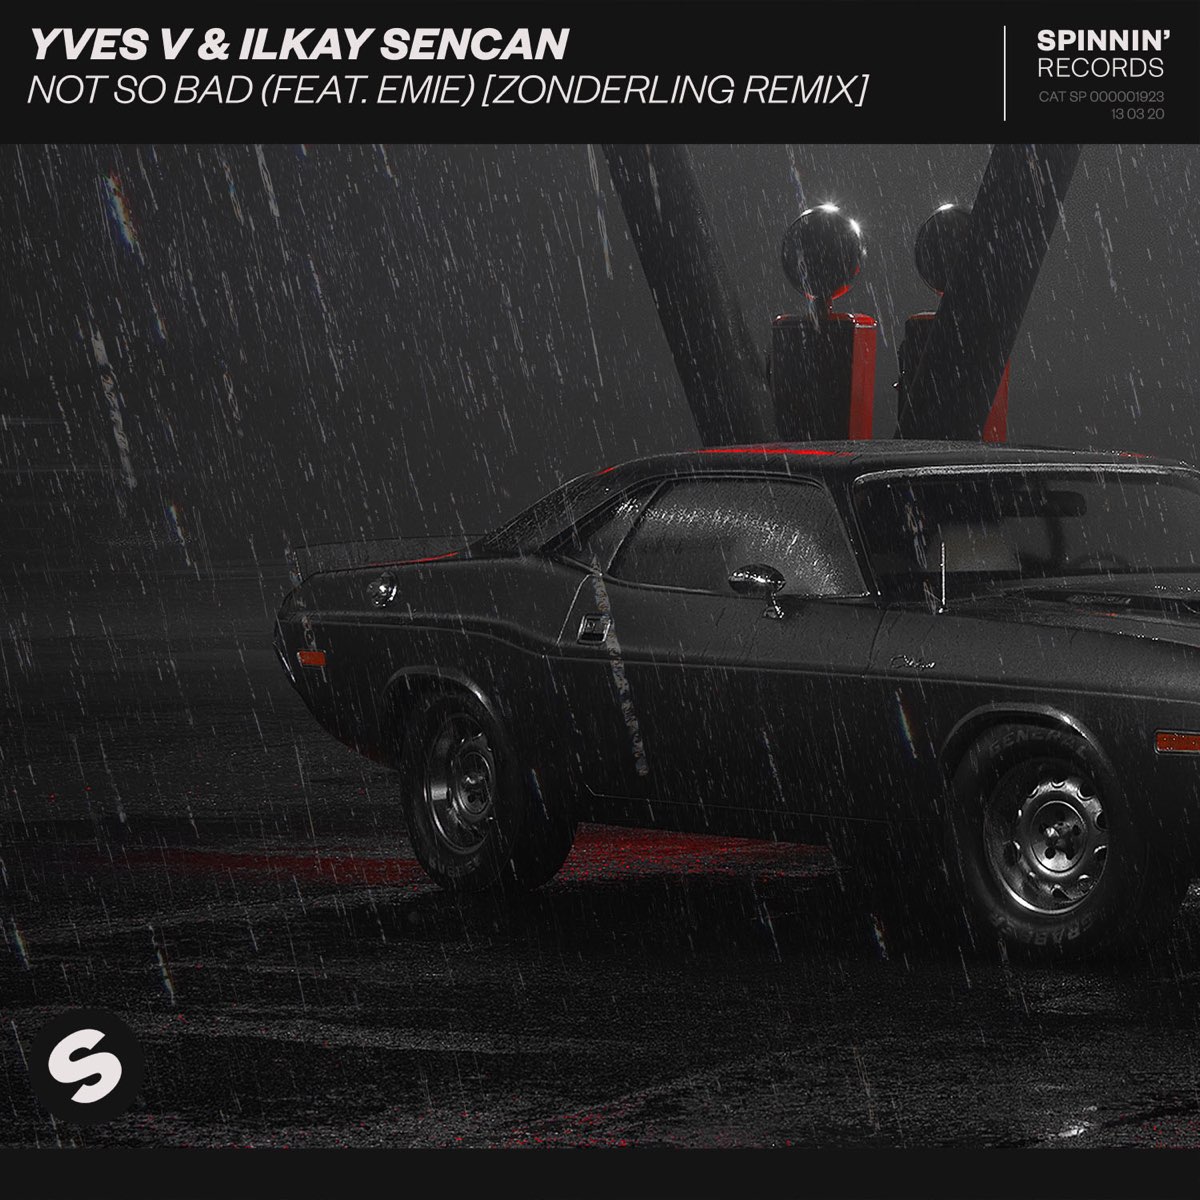 Yves v & Ilkay Sencan feat. Emie - not so Bad. Not so Bad. Yves v & Ilkay Sencan. Zonderling, Yves v, Ilkay Sencan, Emie - not so Bad (Zonderling Remix; feat. Emie).